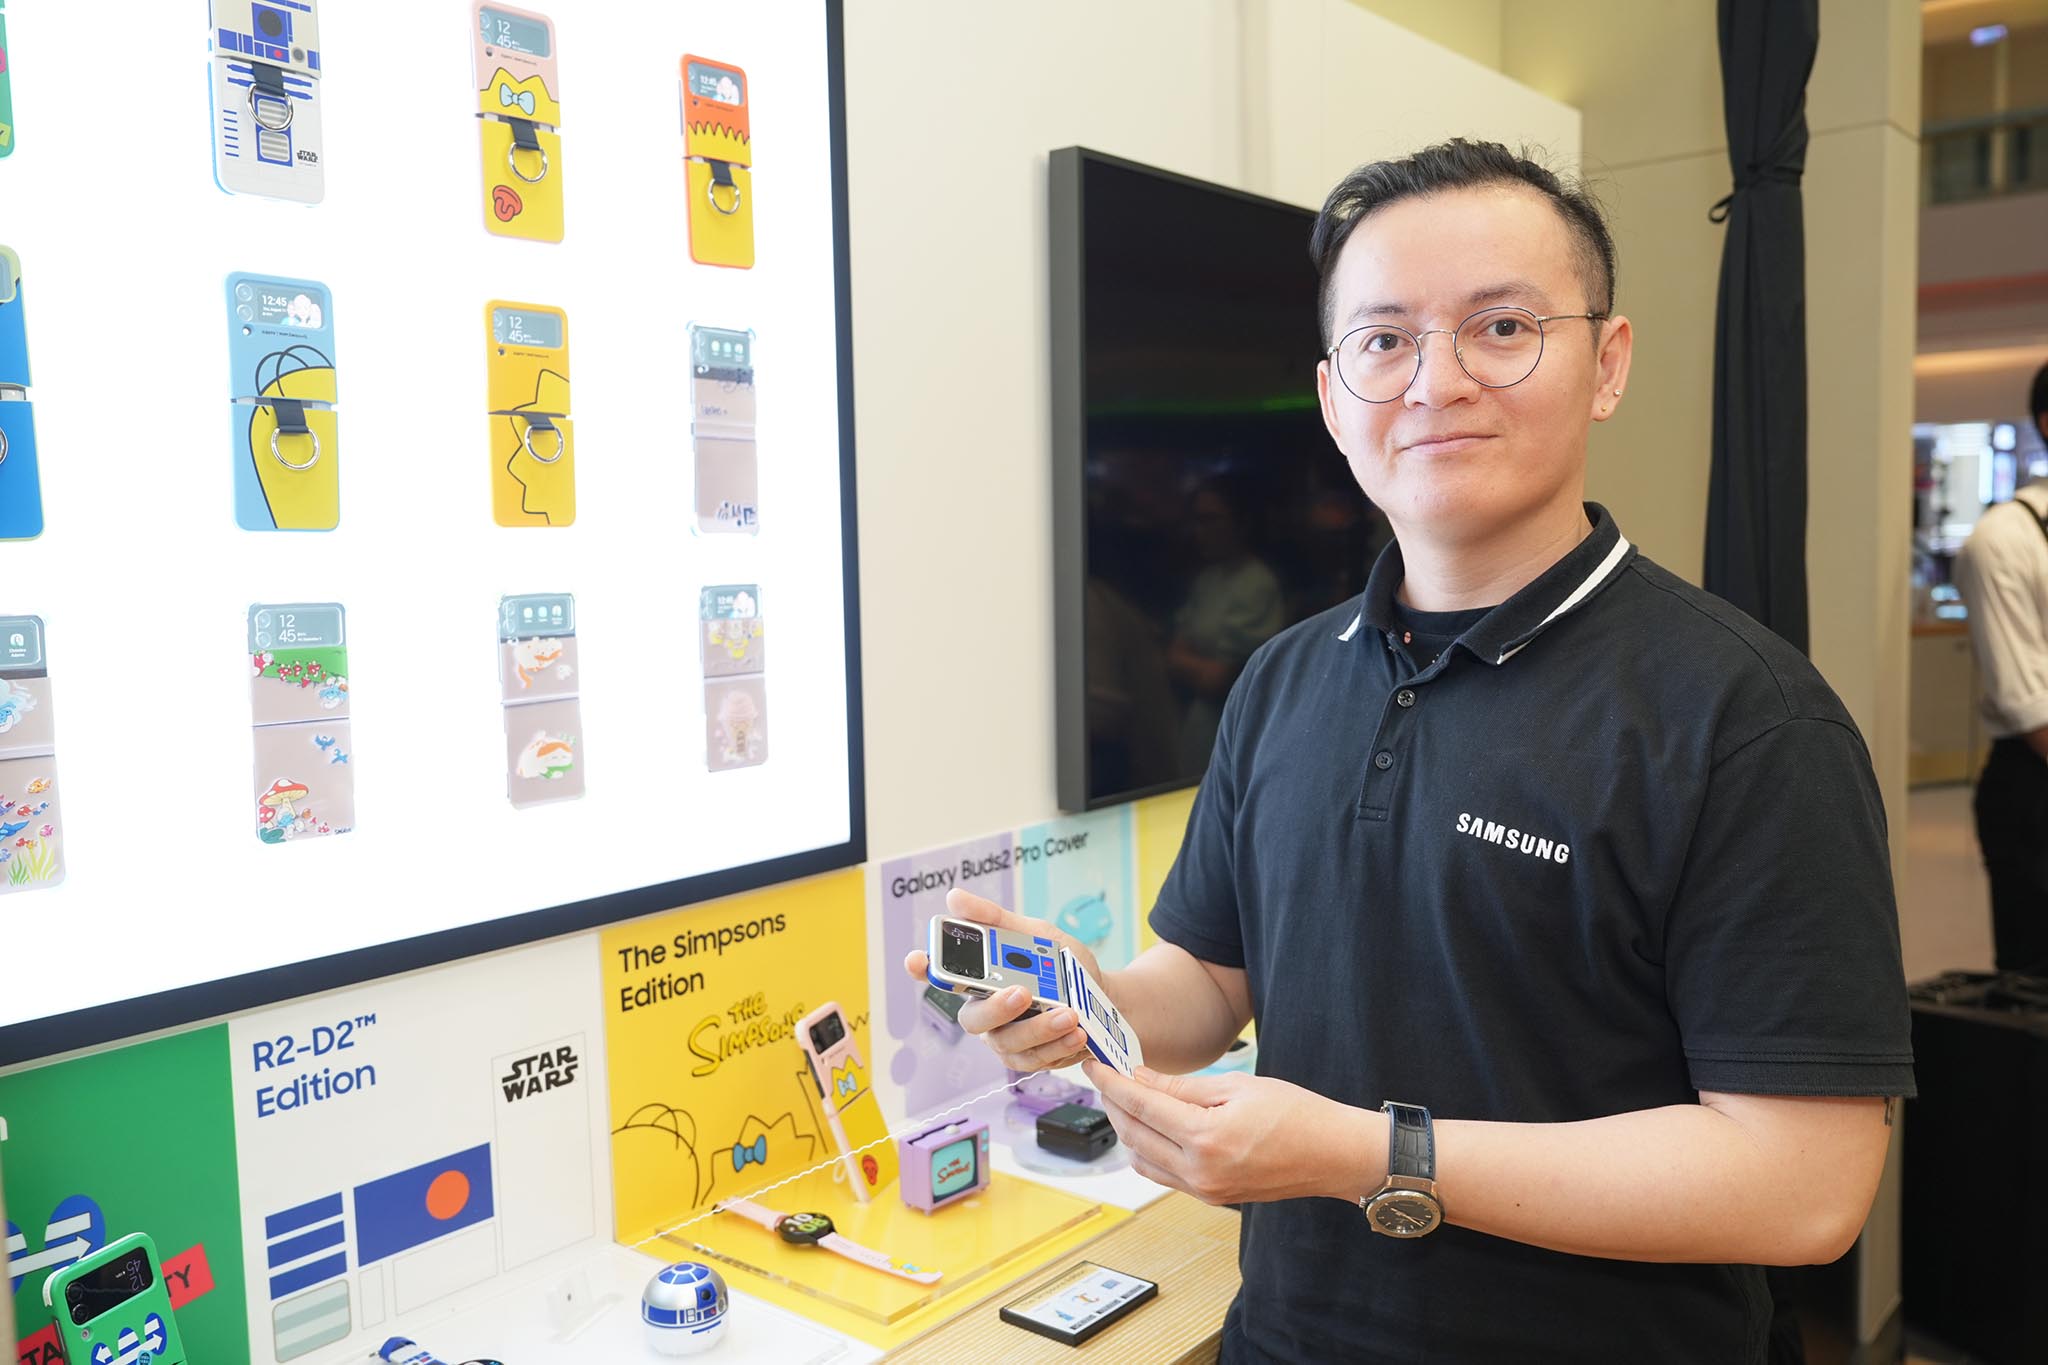 Samsung chinh phục giới trẻ Hà Nội với không gian phụ kiện “Cá nhân hóa cùng Galaxy” tại chuỗi cửa hàng trải nghiệm Samsung